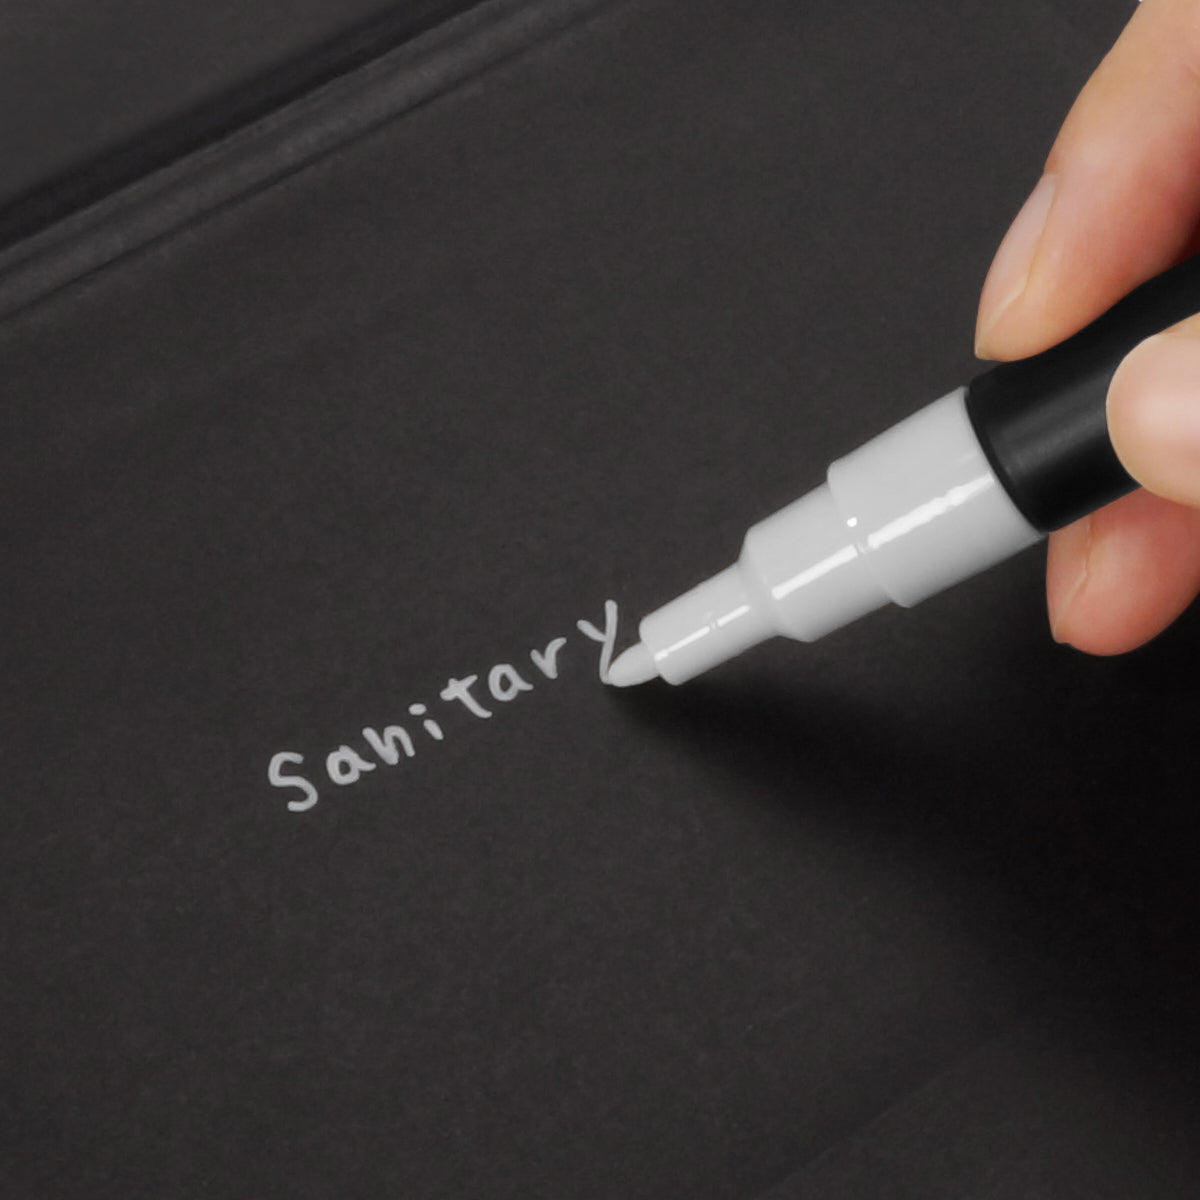 表面は紙製なので水性ペンで記入が可能で、使用用途などを書いておけます。